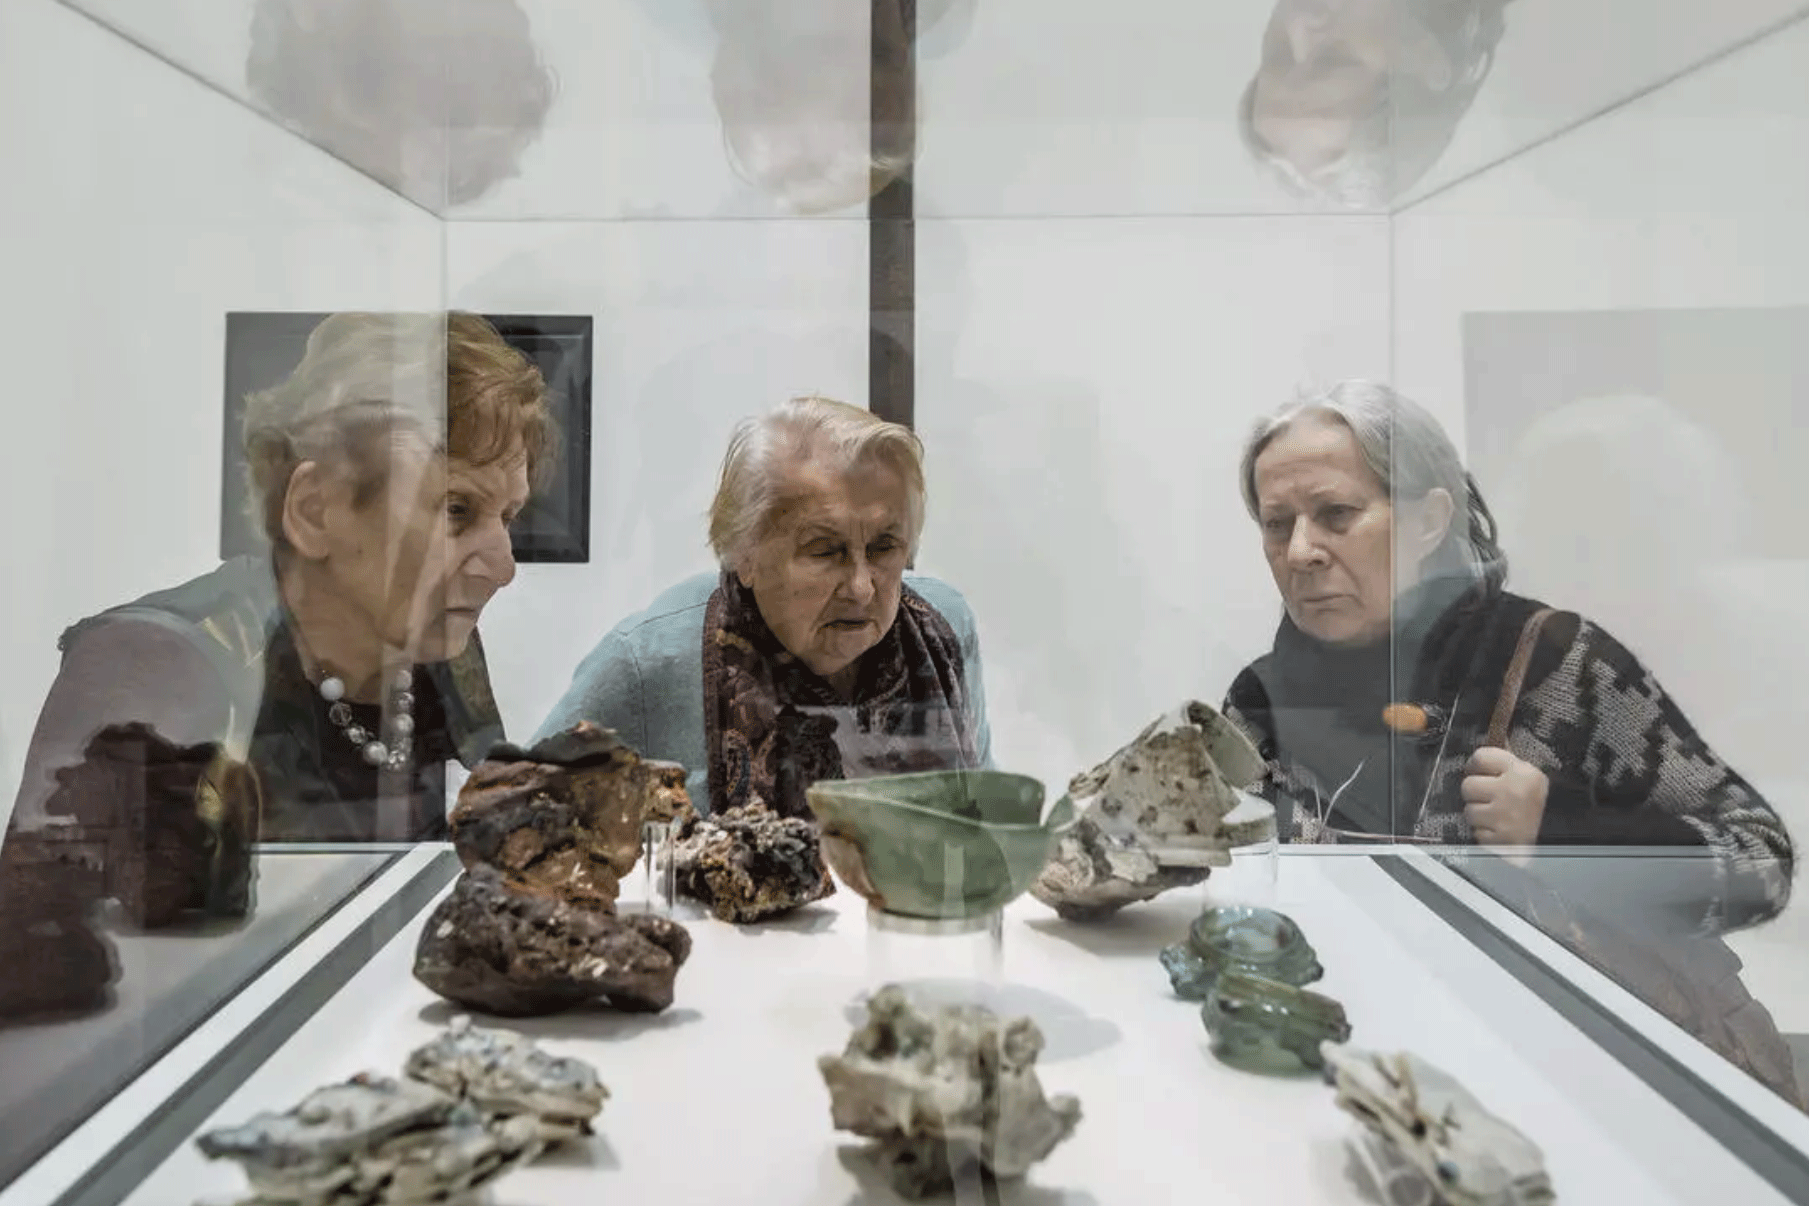 قطع فخارية أدى قصف هيروشيما النووي إلى ذوبانها،معروضة في متحف الحرب العالمية الثانية في دانسك ببولندا، في 29 يناير 2017